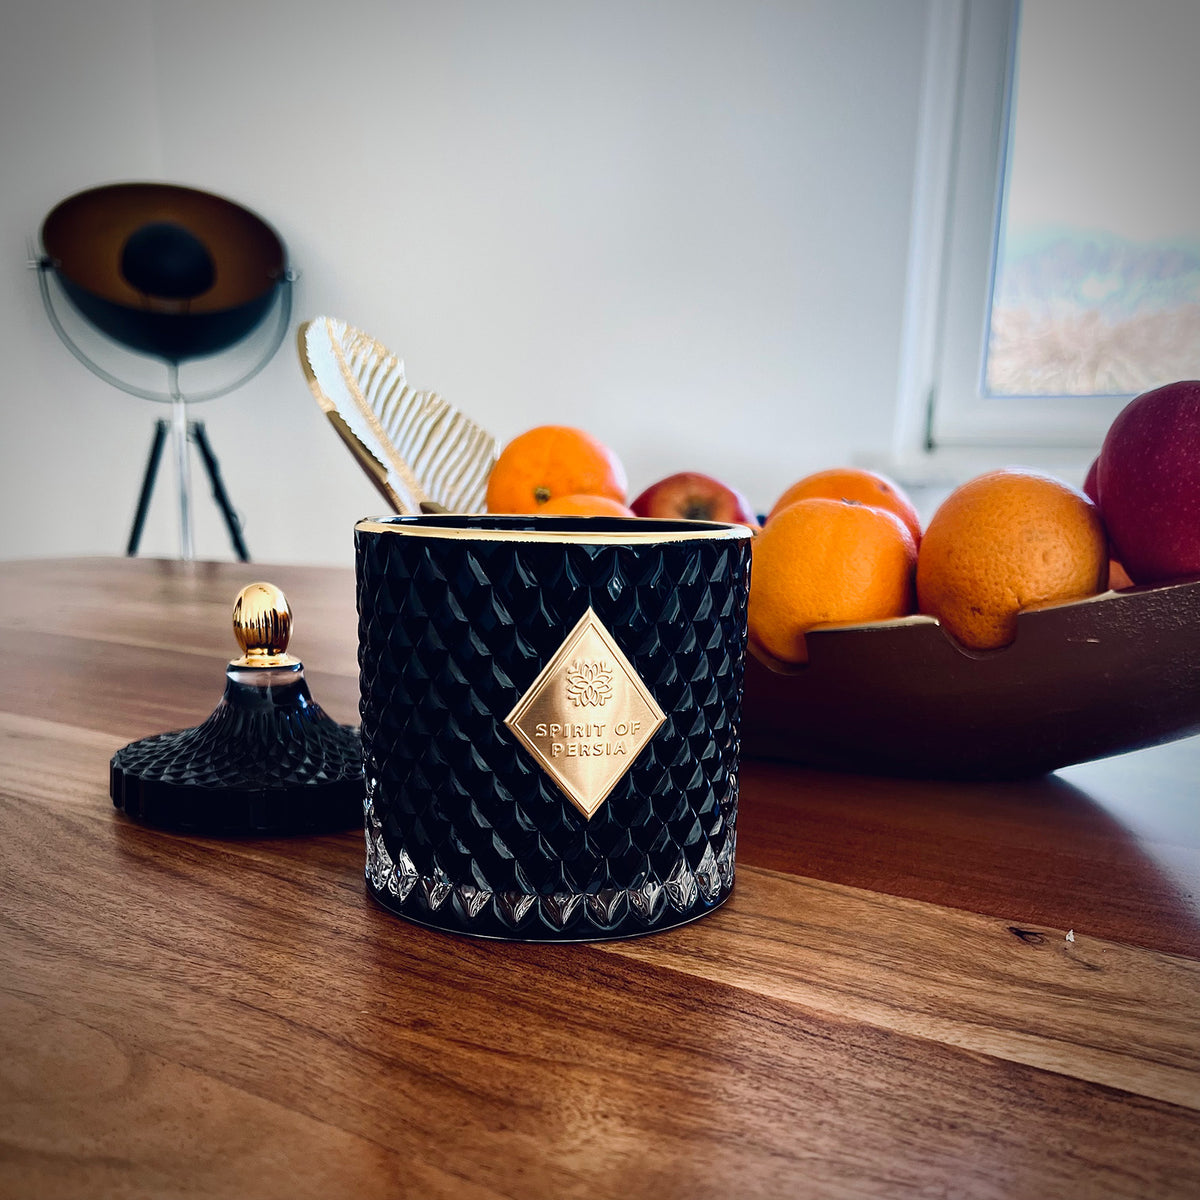 Unsere hochwertige Duftkerze Teheran auf einem Holztisch. Im Hintergrund befindet sich eine goldene Schale mit Orangen und eine schwarz-goldene Stehlampe.